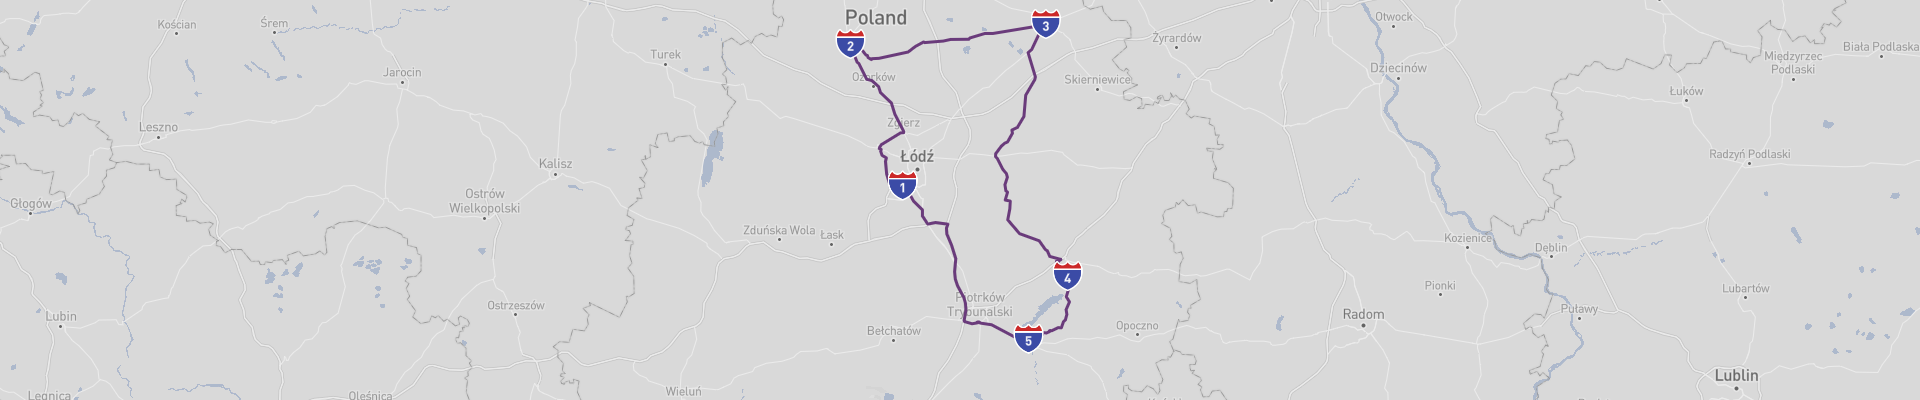 Route panoramique de la région de Lodz